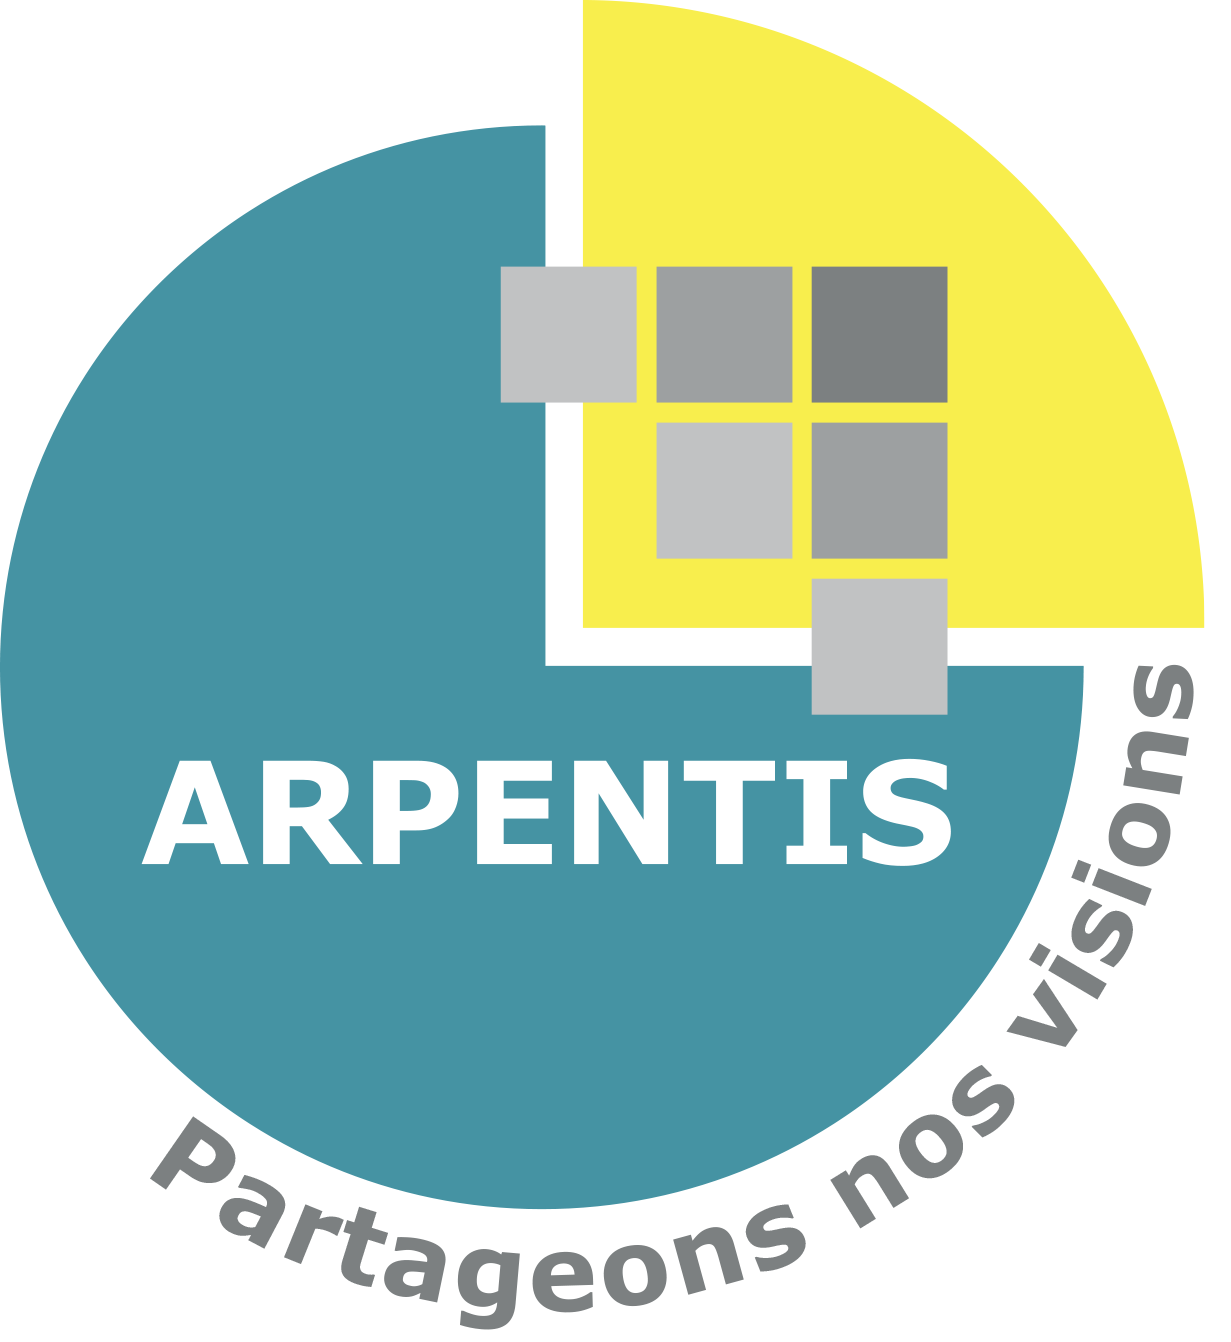 ARPENTIS PRESENTS - Logo